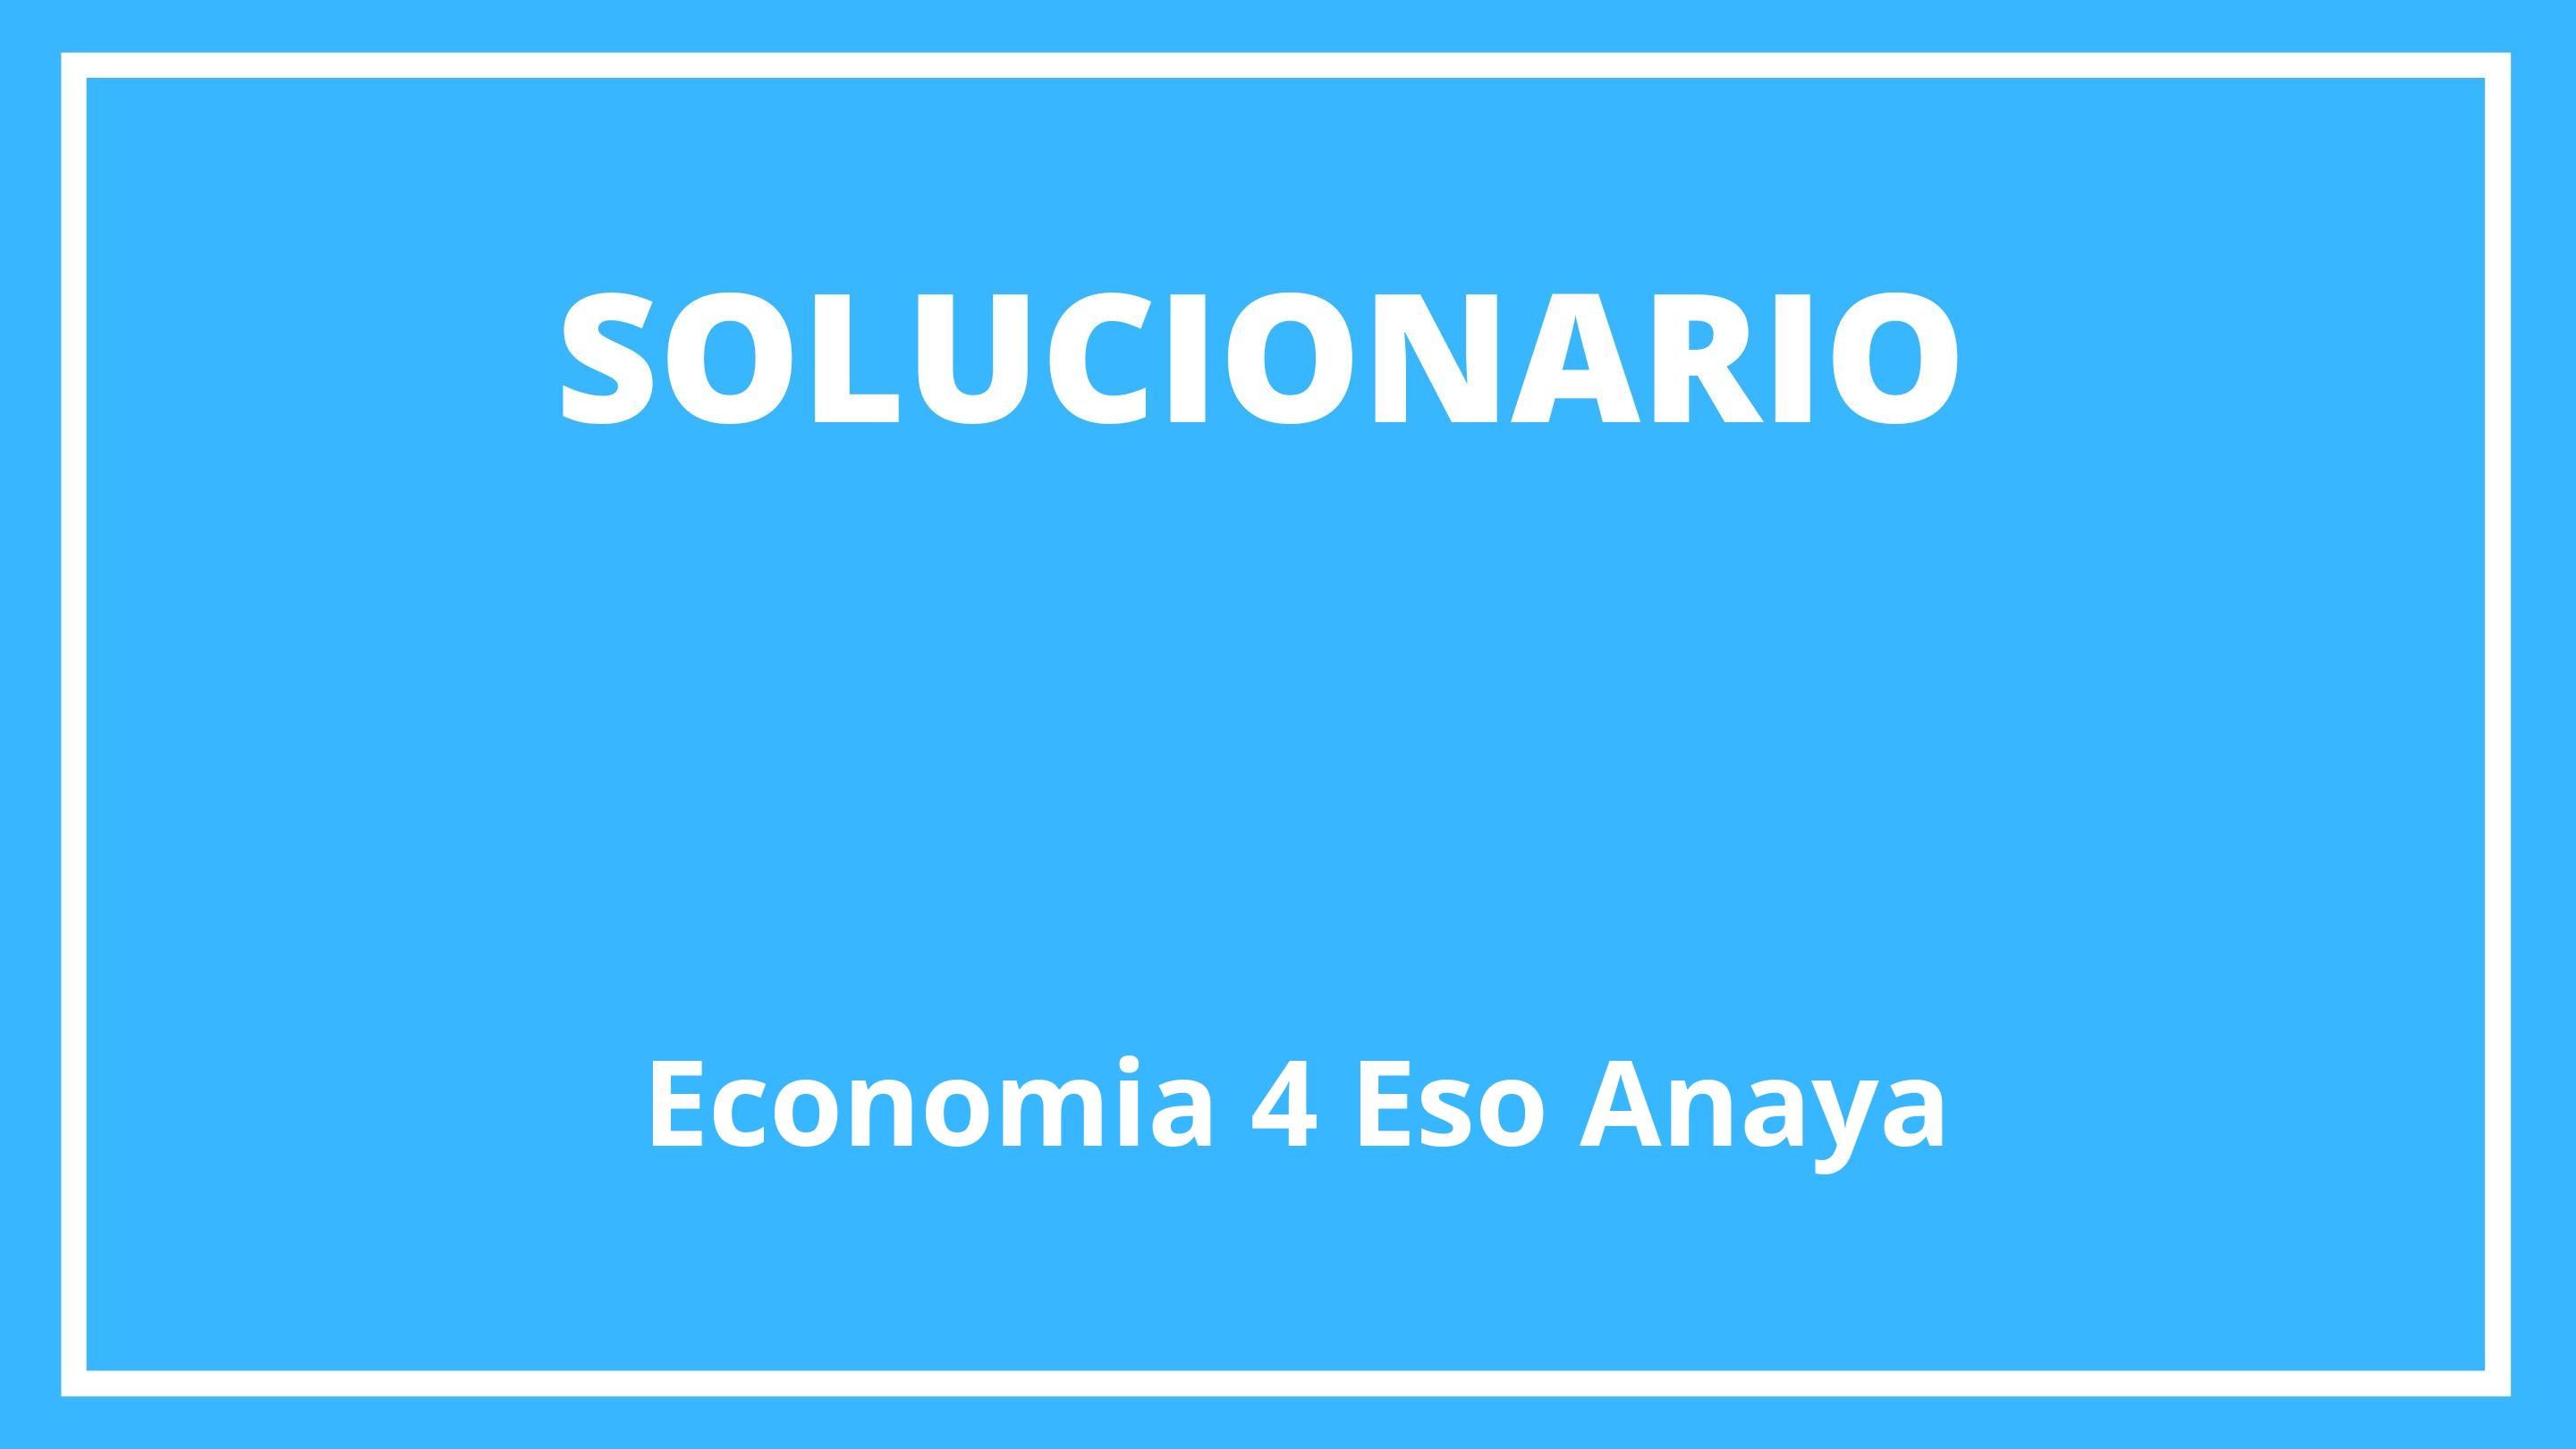 Solucionario Economia 4 Eso Anaya